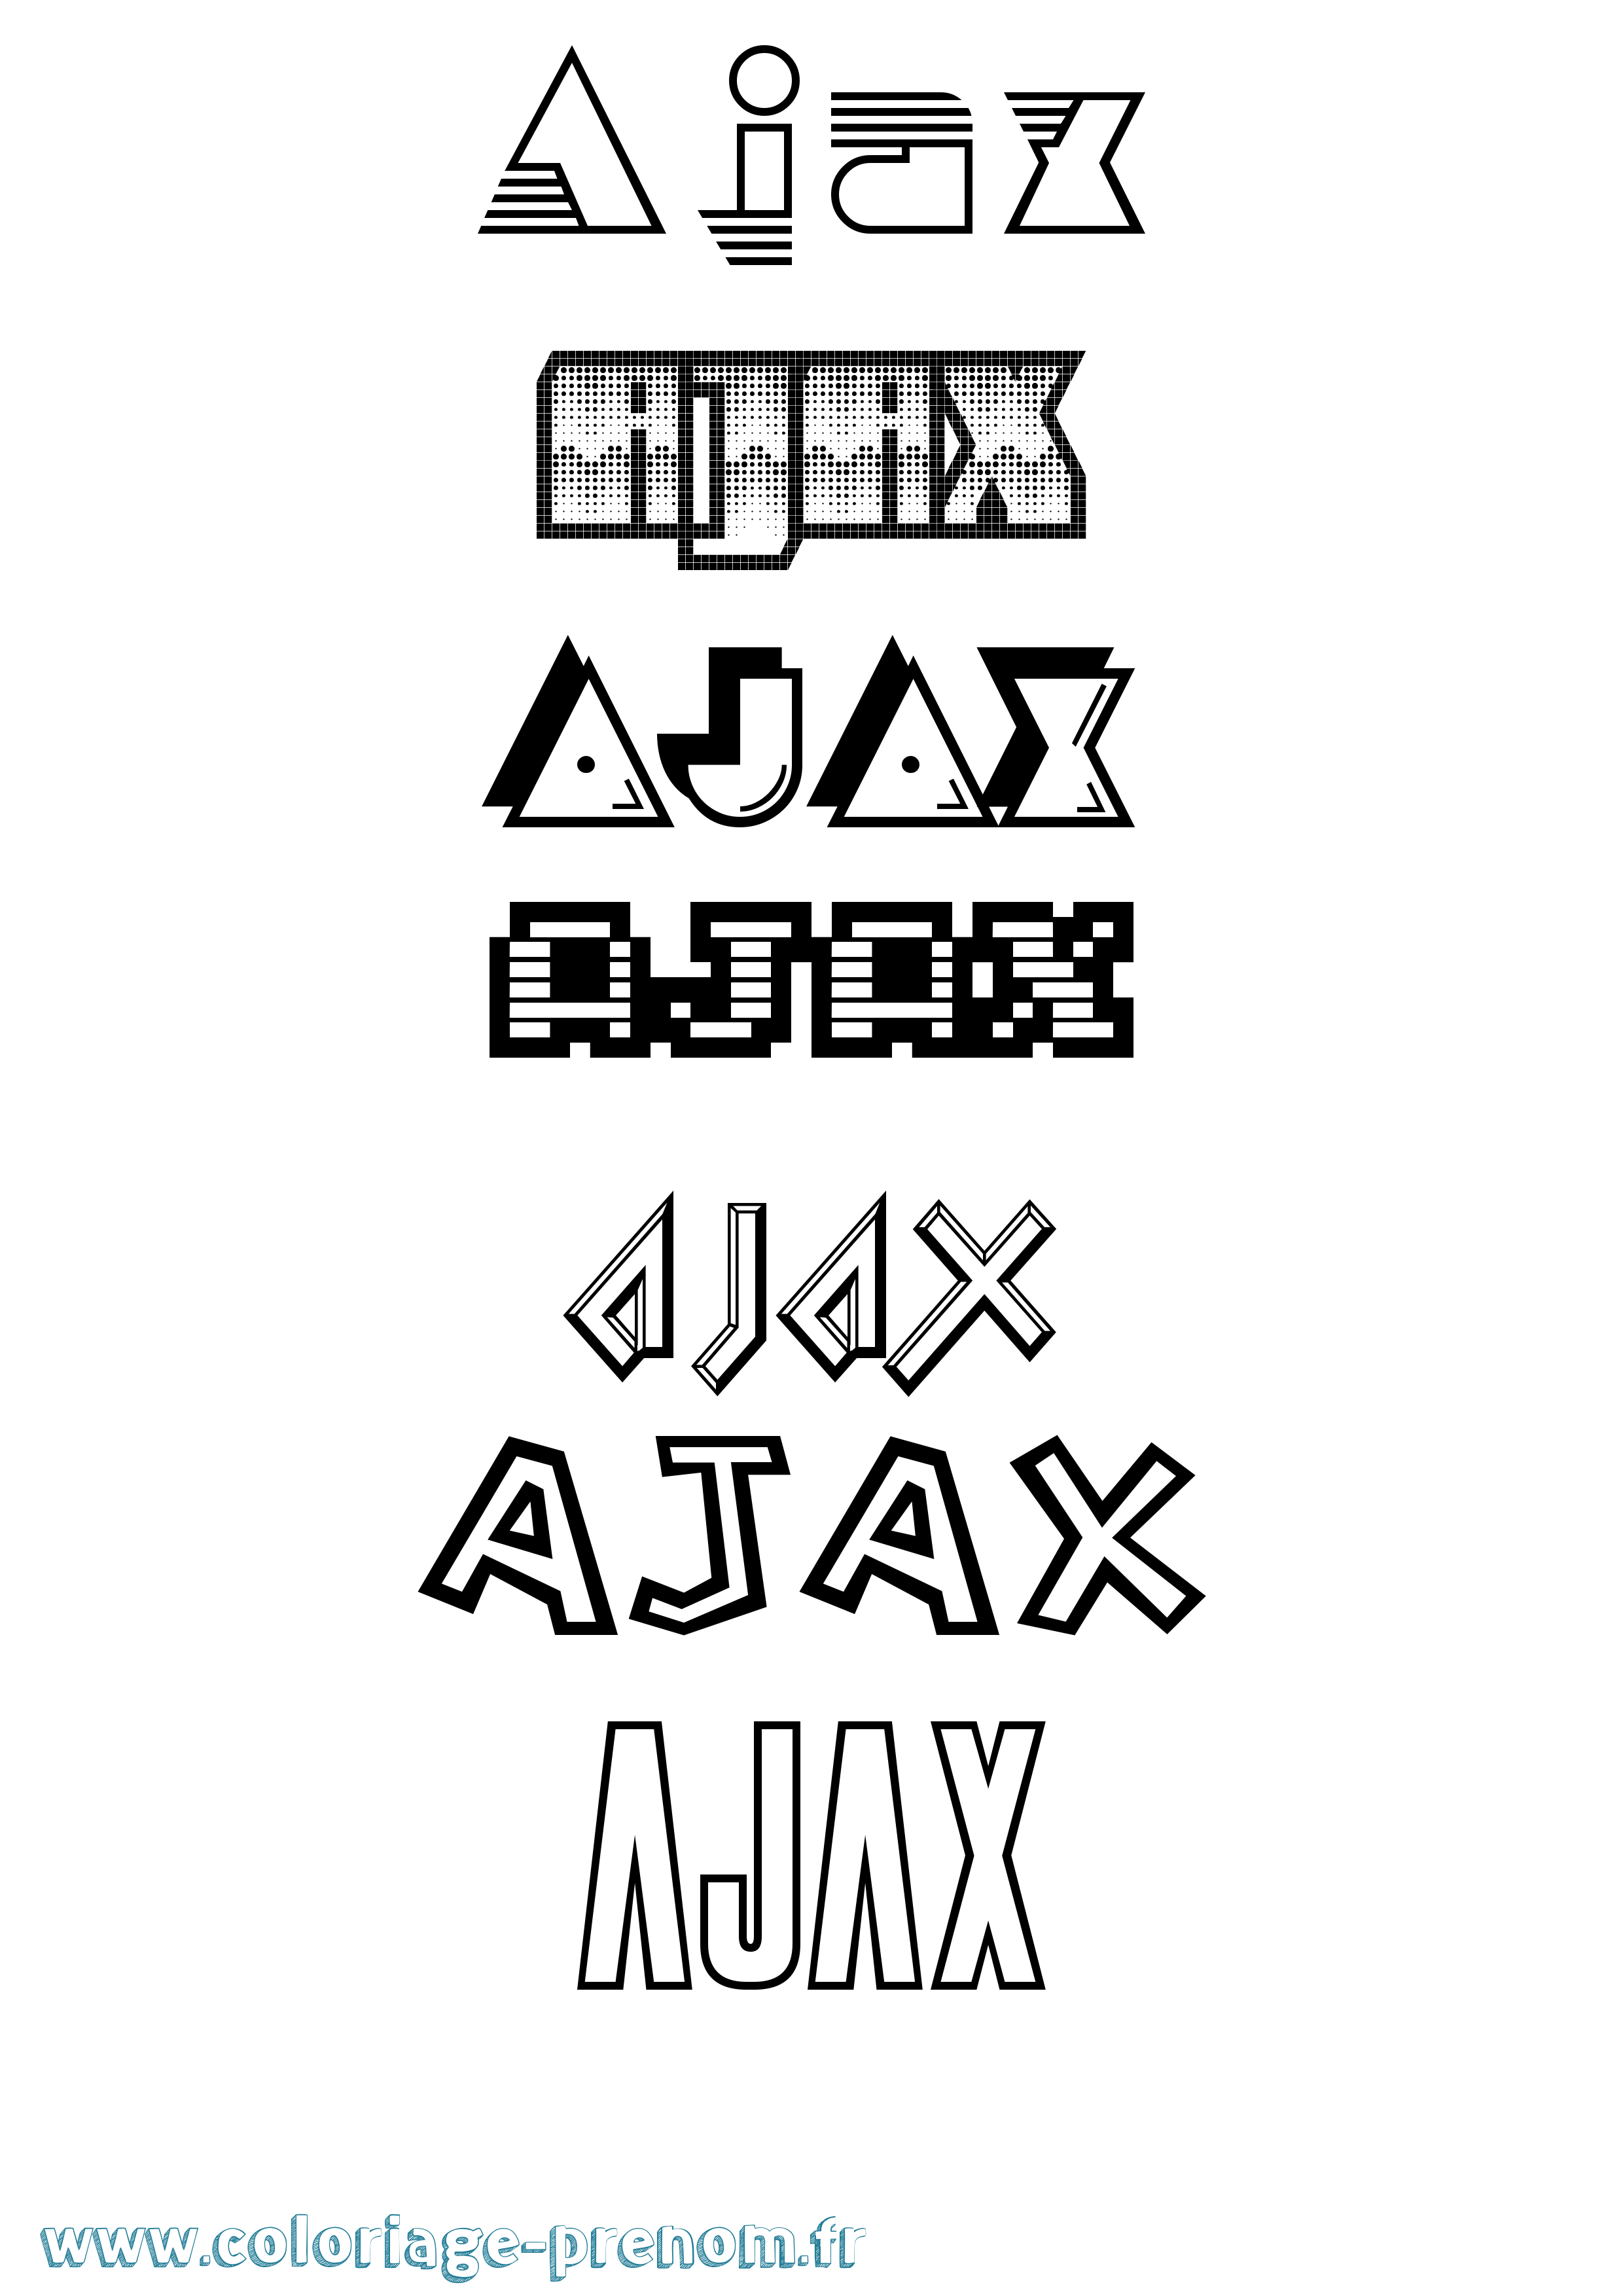 Coloriage prénom Ajax Jeux Vidéos